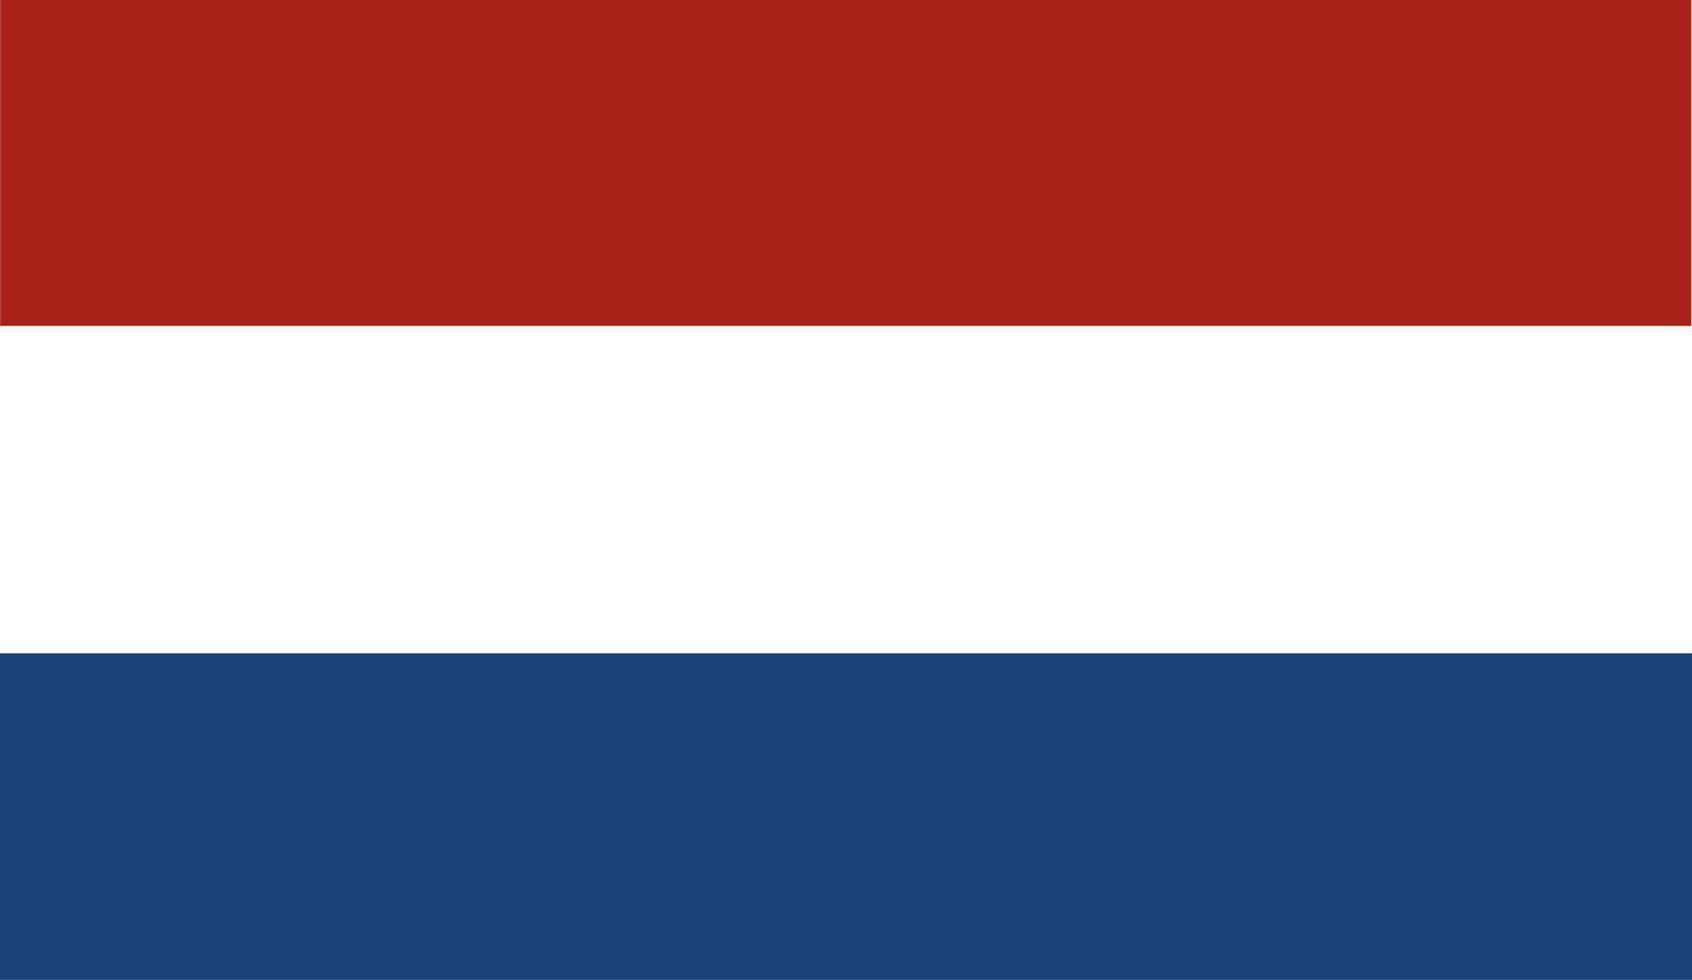 vlag van nederland.officiële verhoudingsdimensie en kleuren. vector illustratie